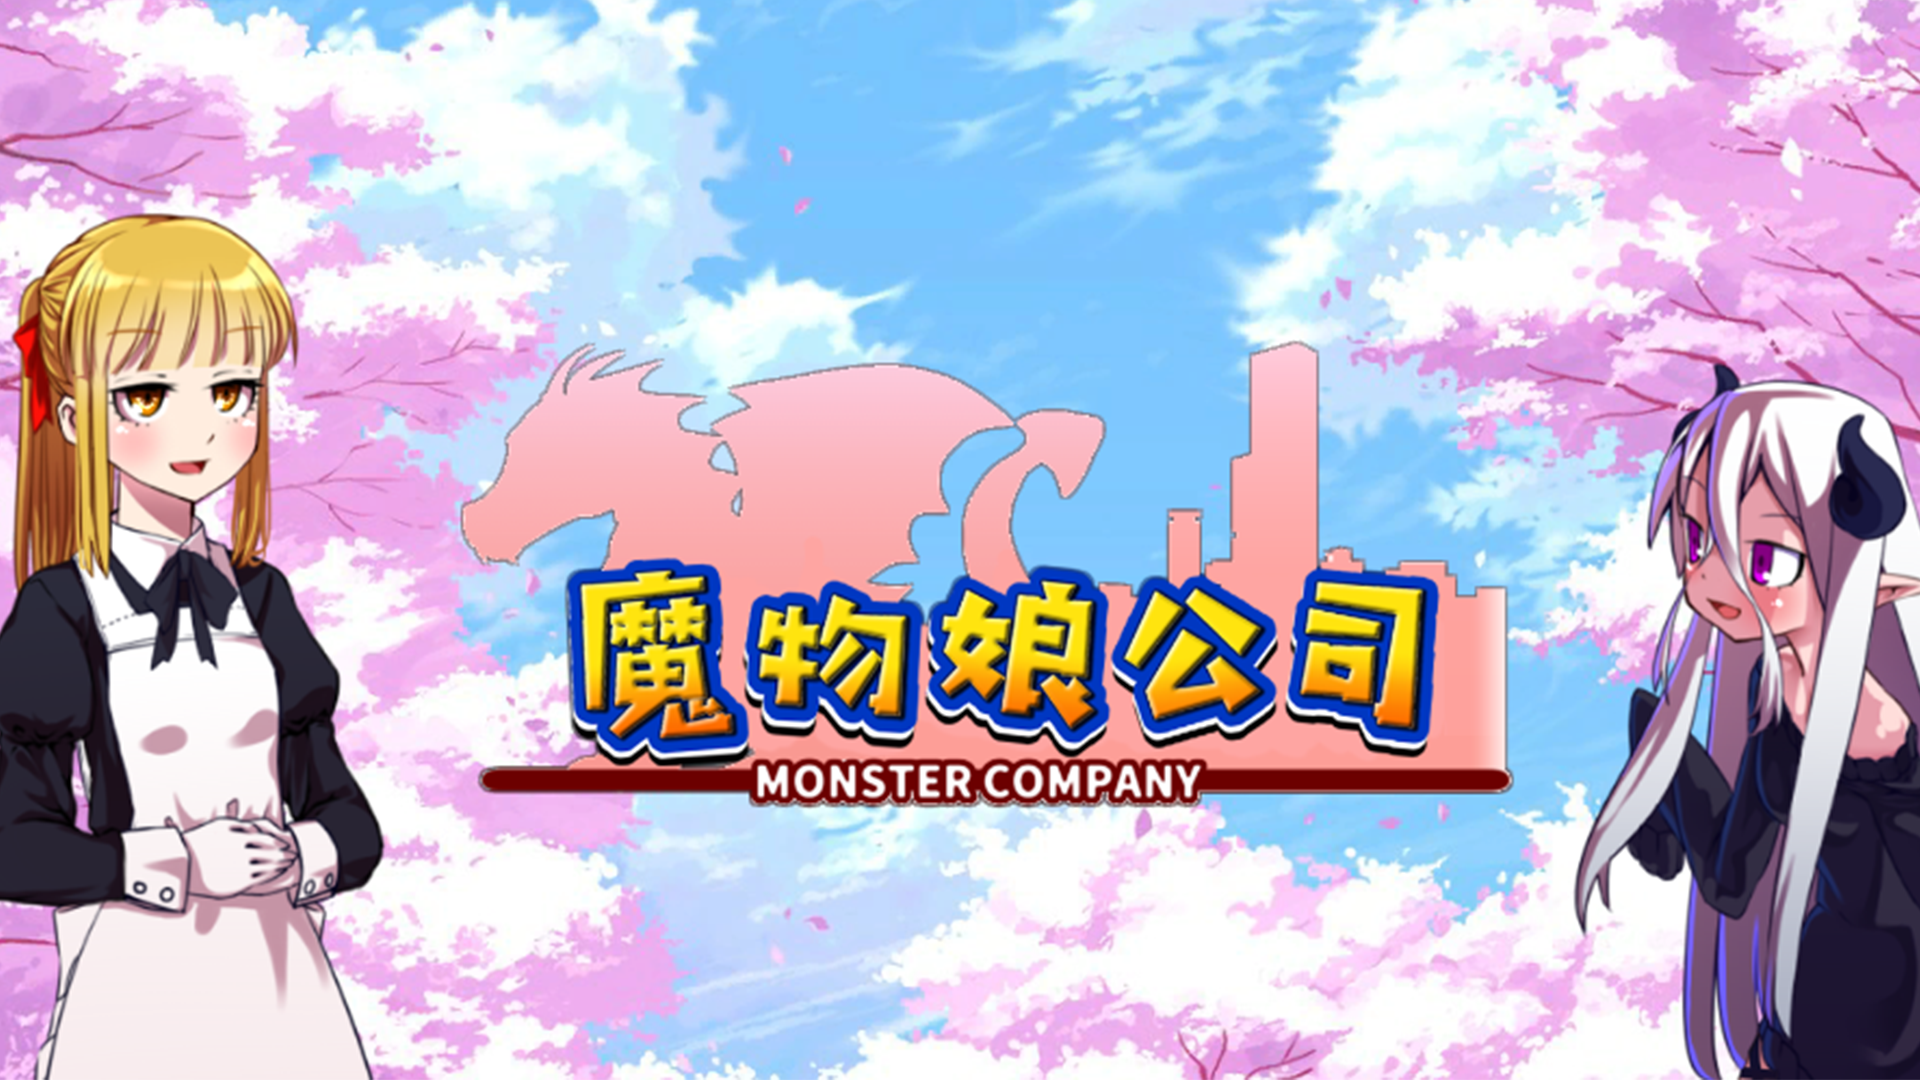 Banner of Monster girl company 